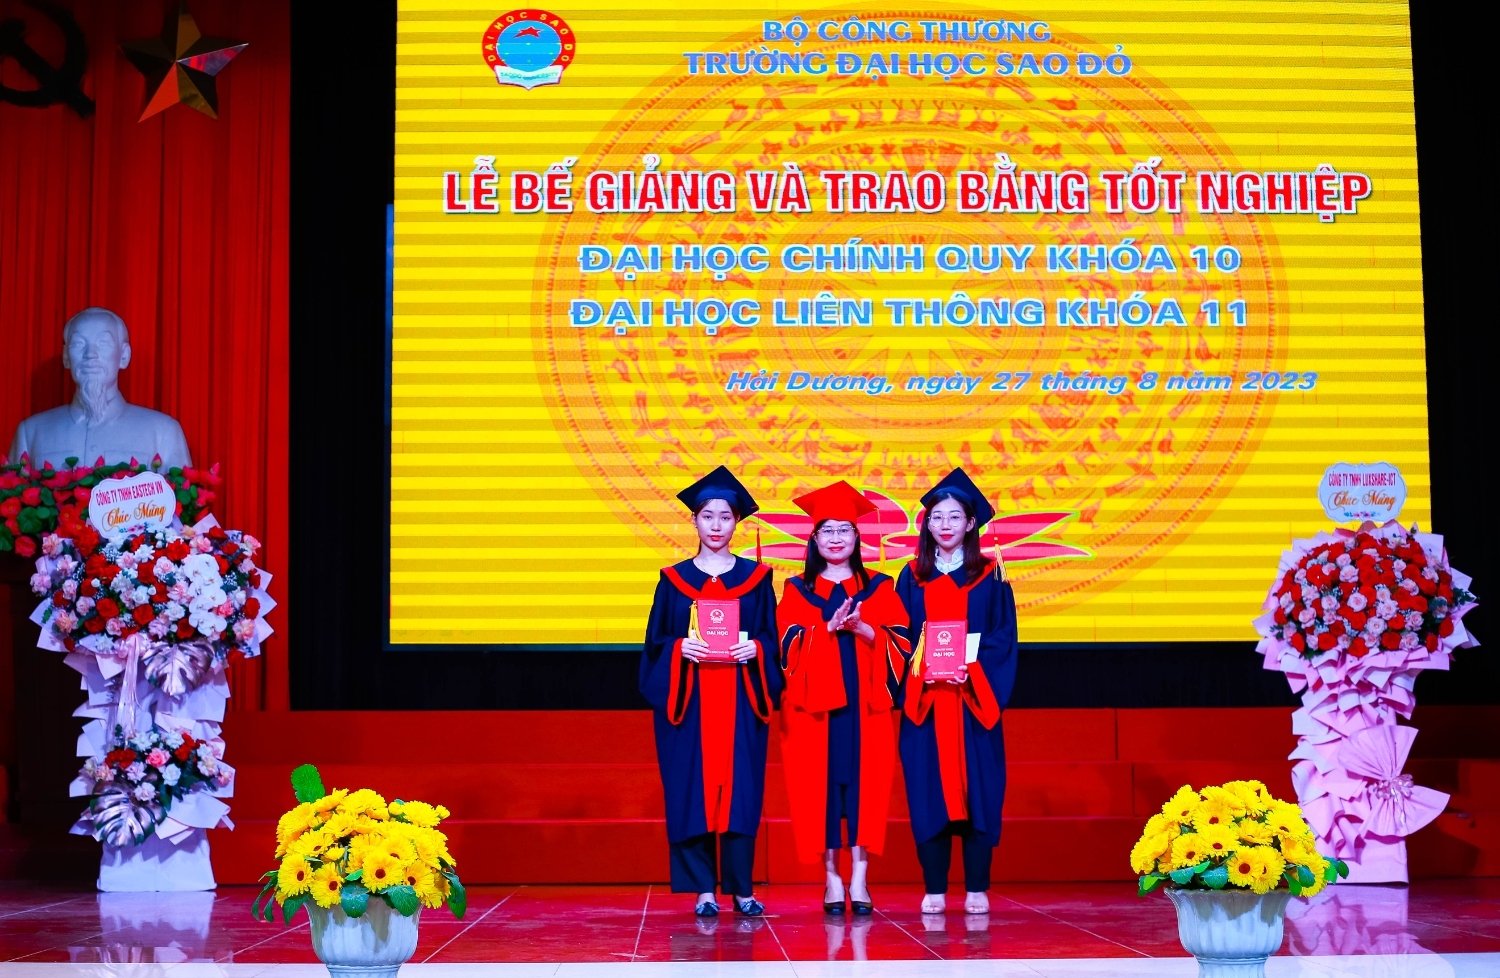 Lễ bế giảng và trao bằng tốt nghiệp Đại học chính quy khóa 10 và Đại học liên thông khóa 11